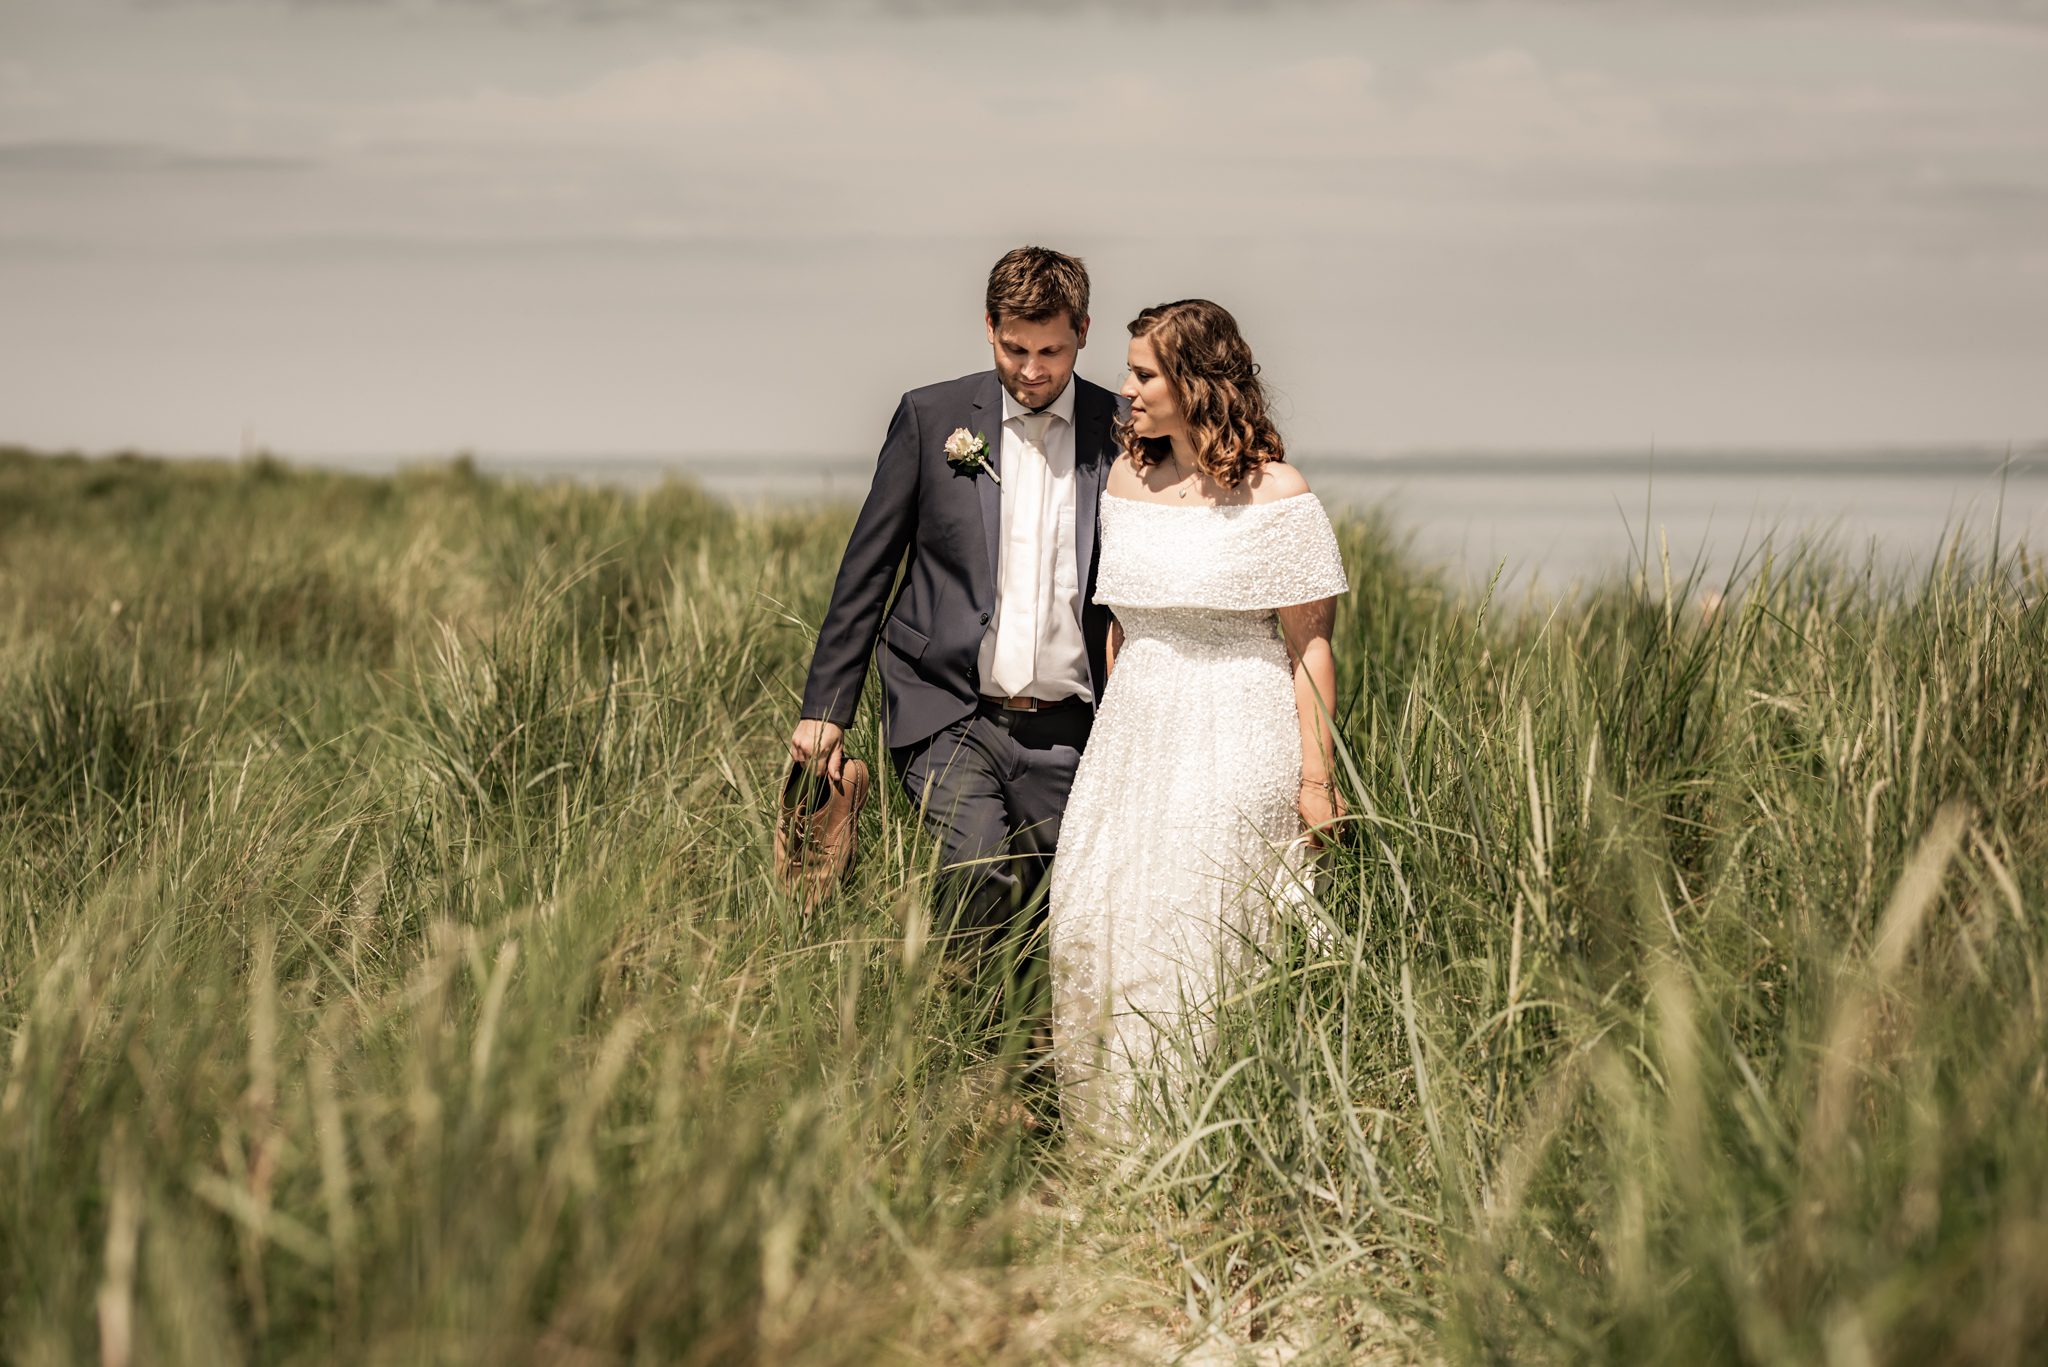 Janine und Sebastian | Elopement Wedding in Hooksiel und Schillig 6